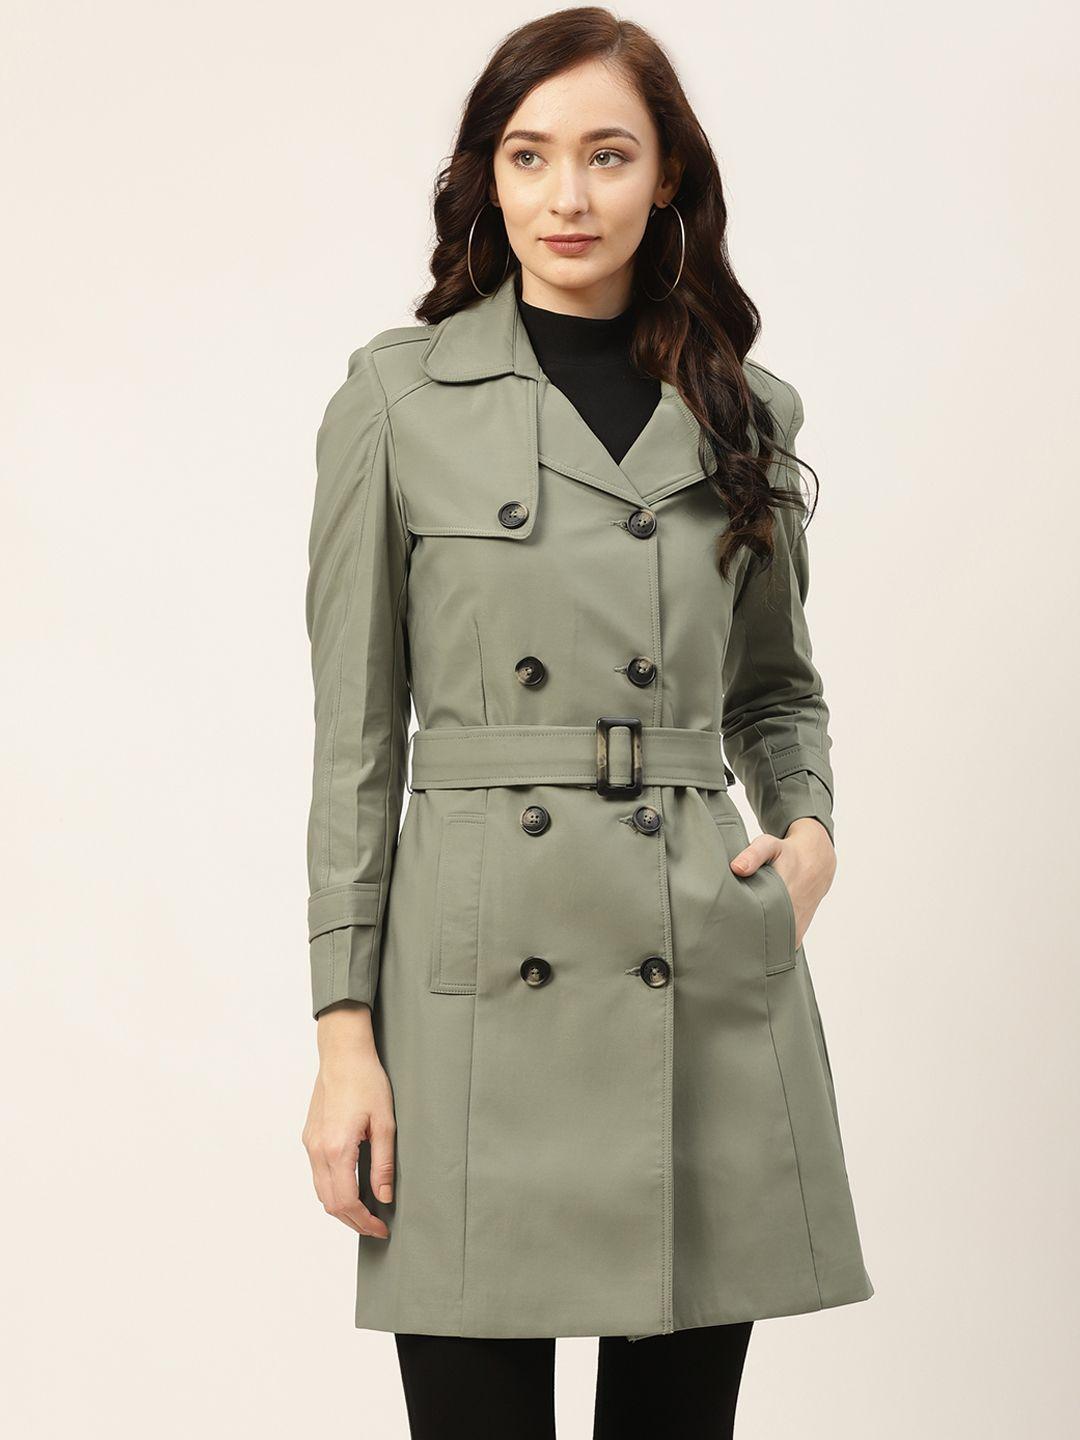 okane women olive green solid longline trench coat & belt